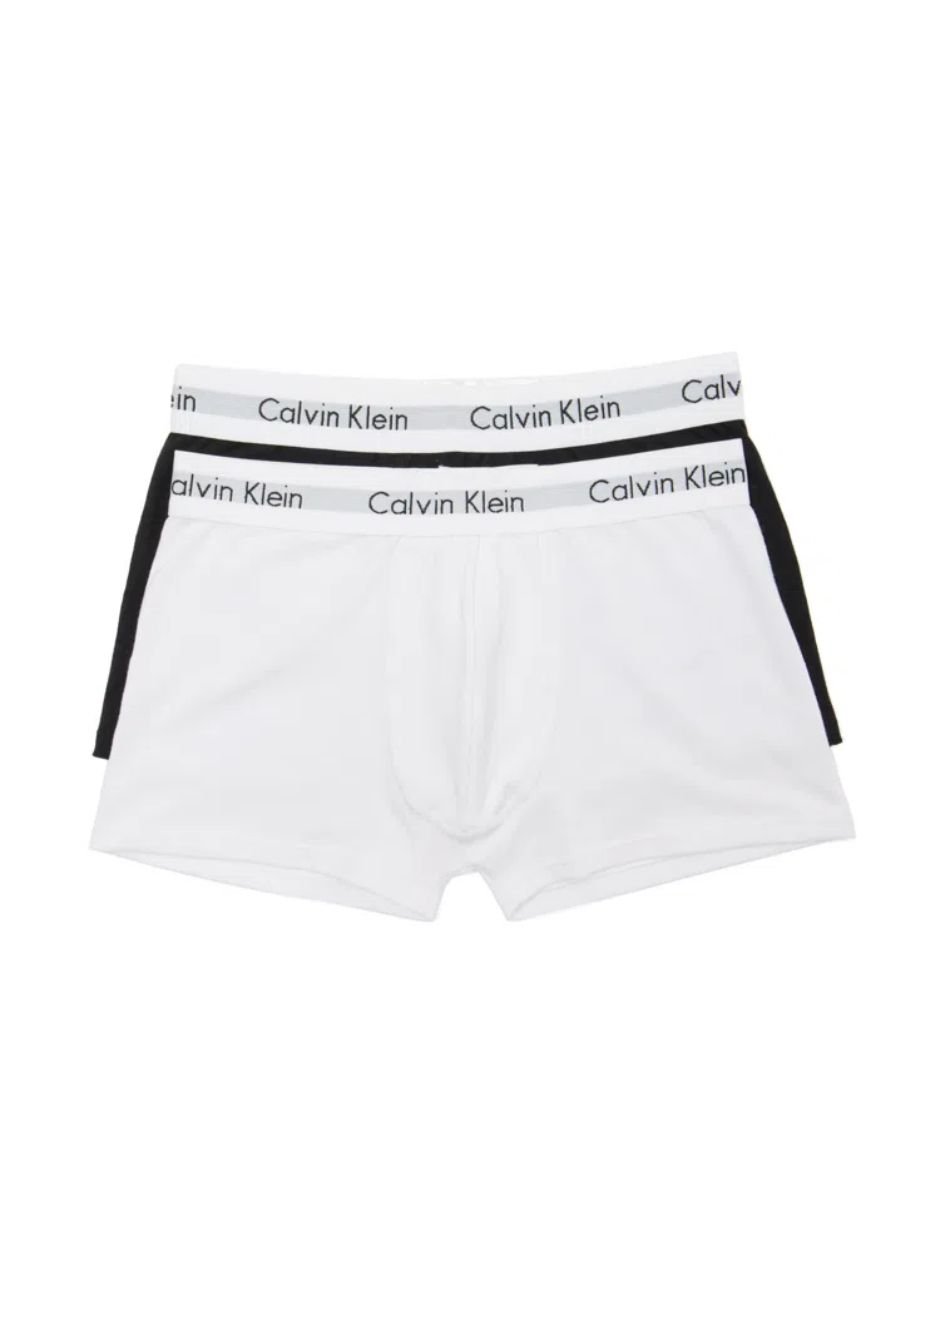 Calvin Klein: 7 Fatos sobre as cuecas da marca